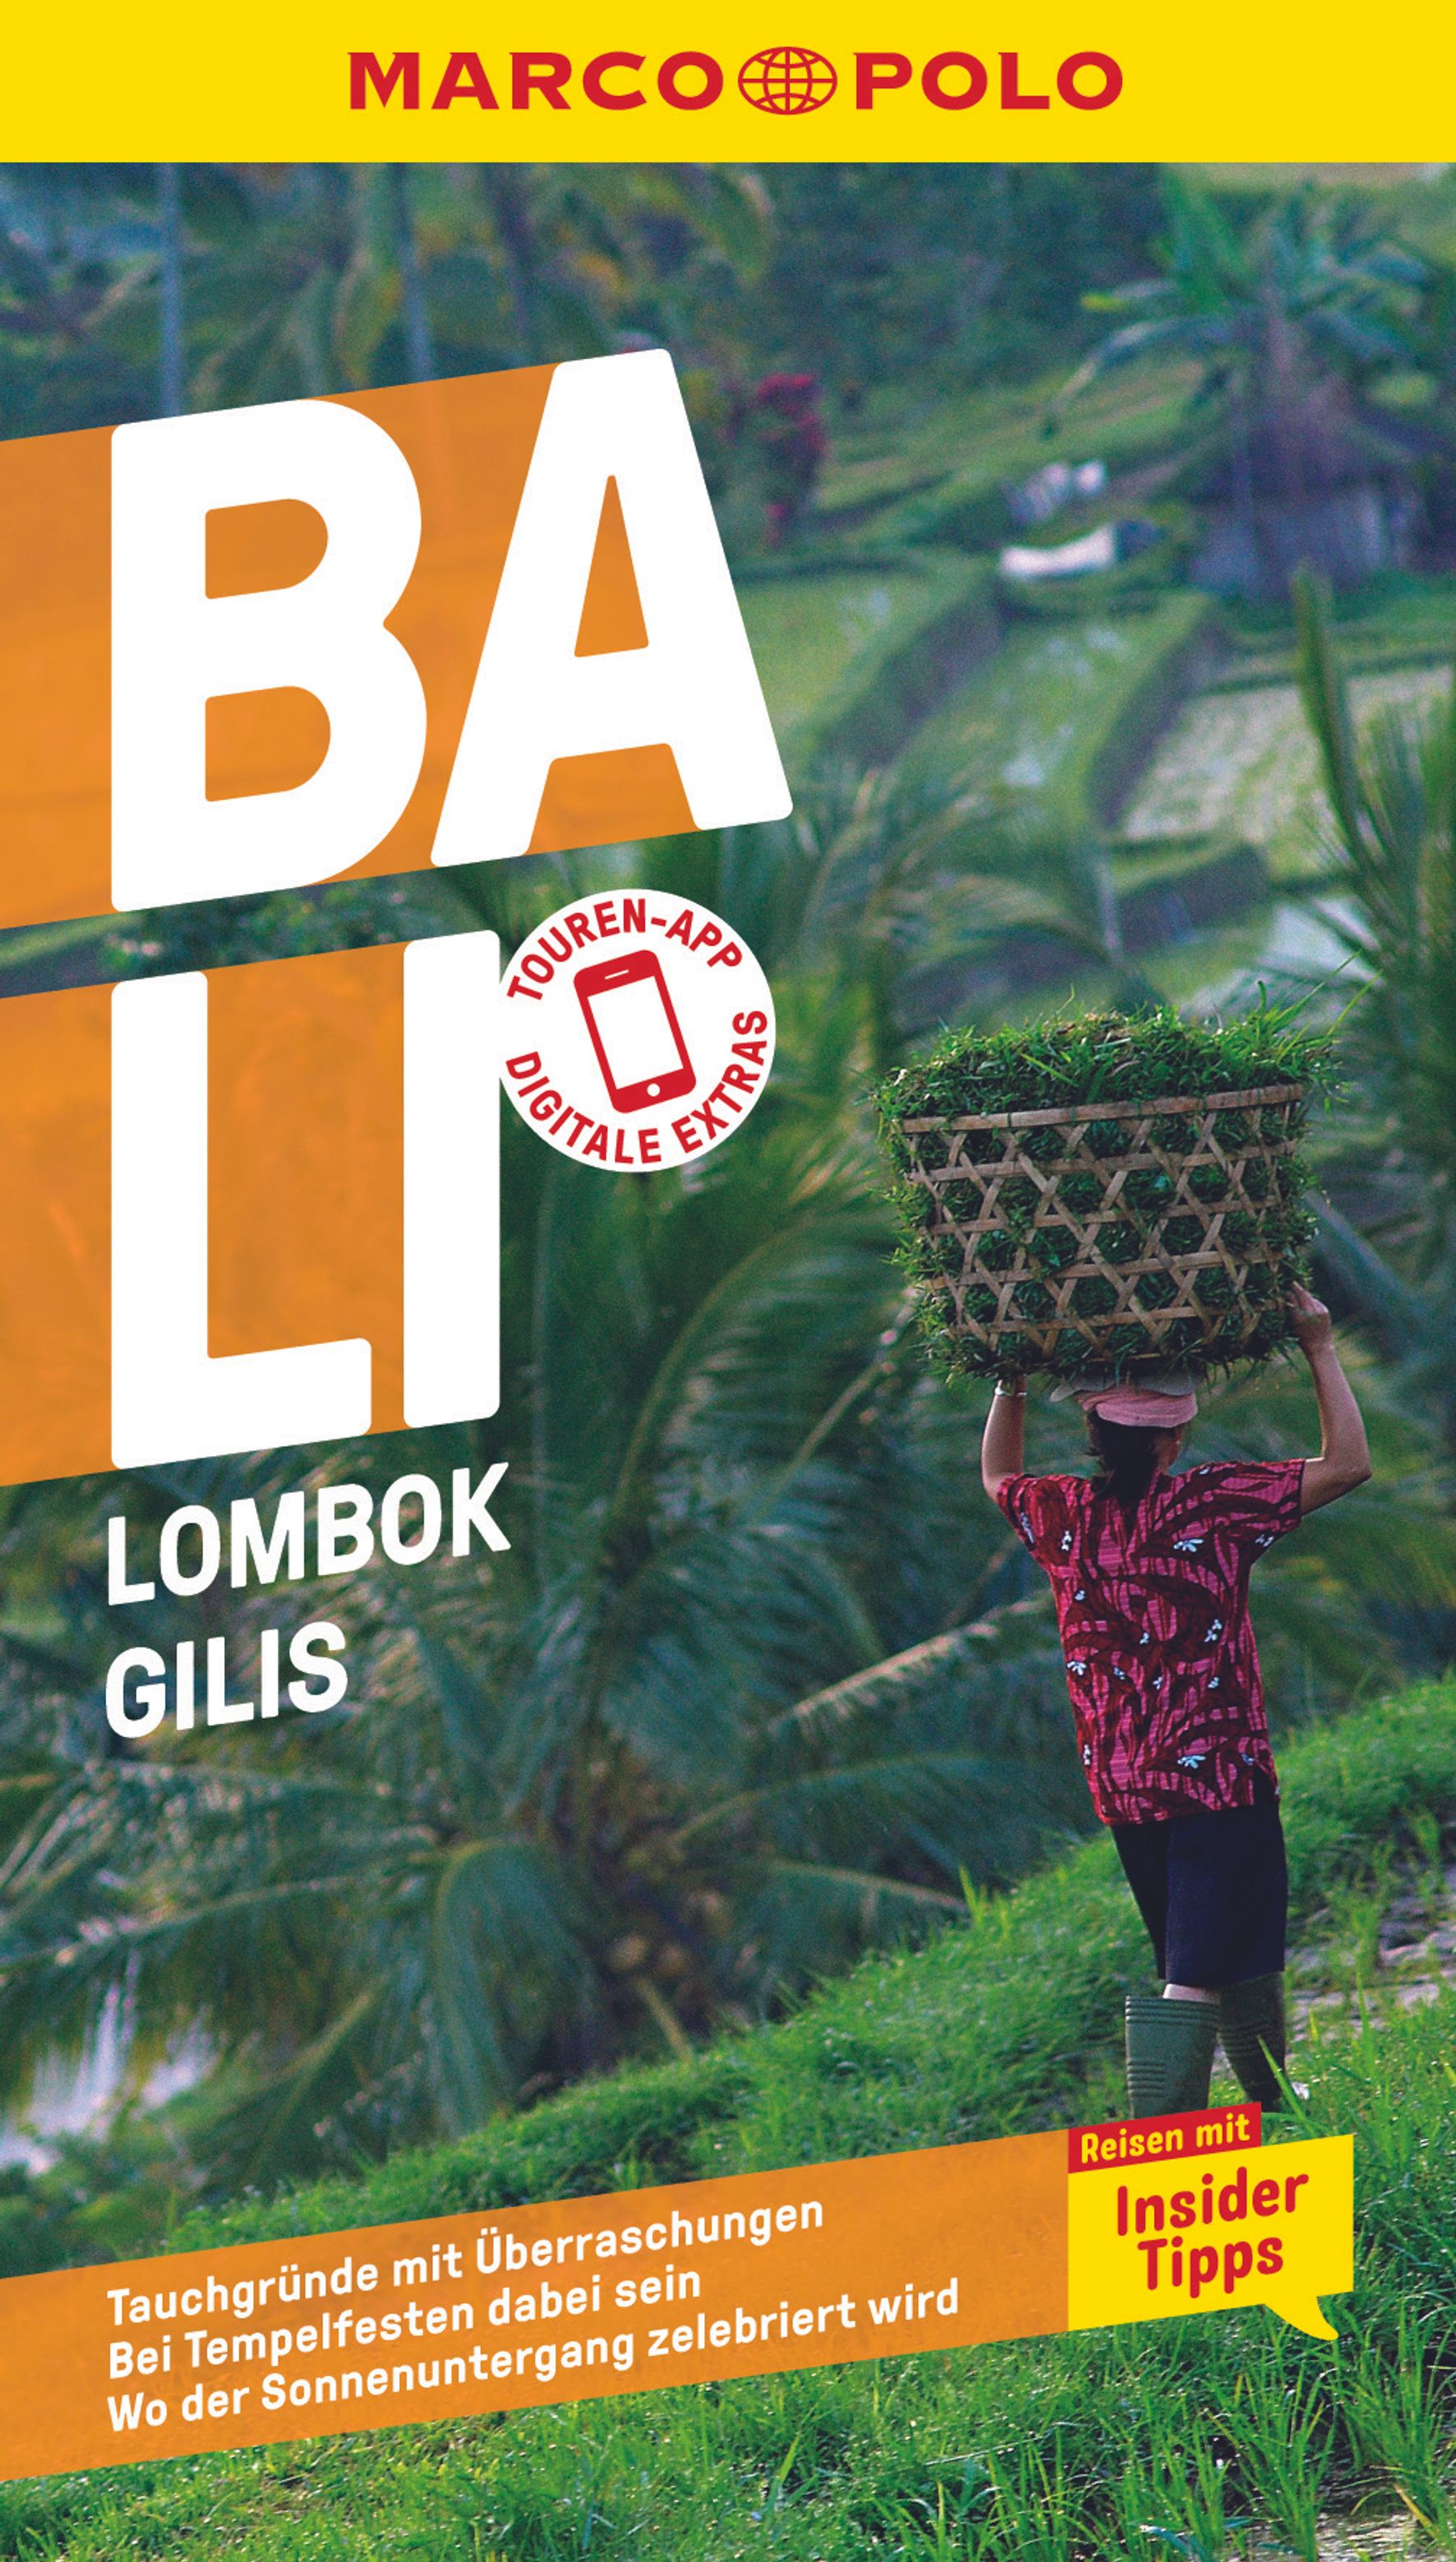 MAIRDUMONT Bali, Lombok, Gilis